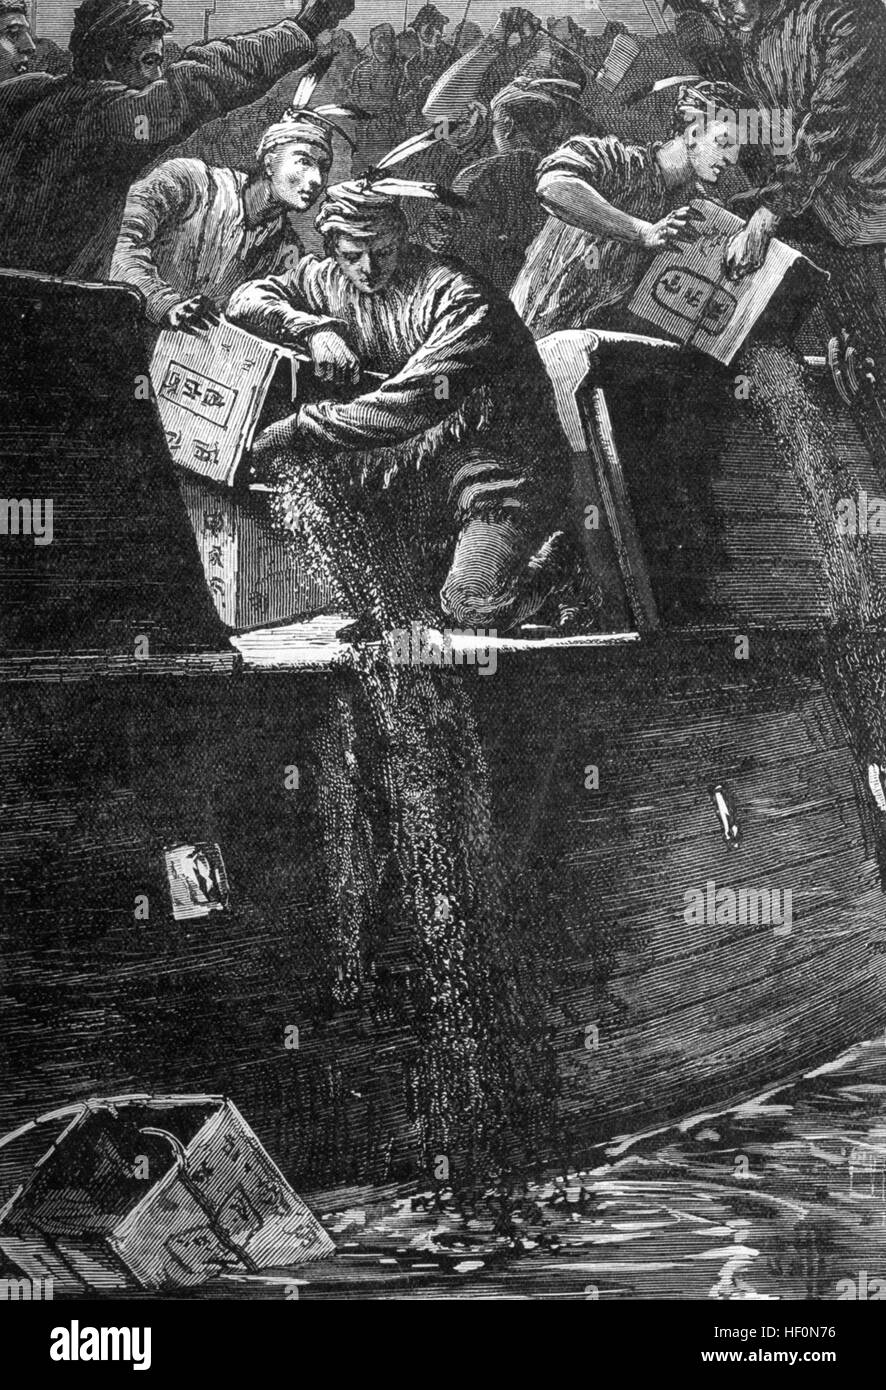 BOSTON TEA PARTY 16. Dezember 1773. Demonstranten Trinkgeld Brust Tee von East India Company Schiffe in den Hafen von Boston in einem 19. Jahrhundert Gravur Stockfoto